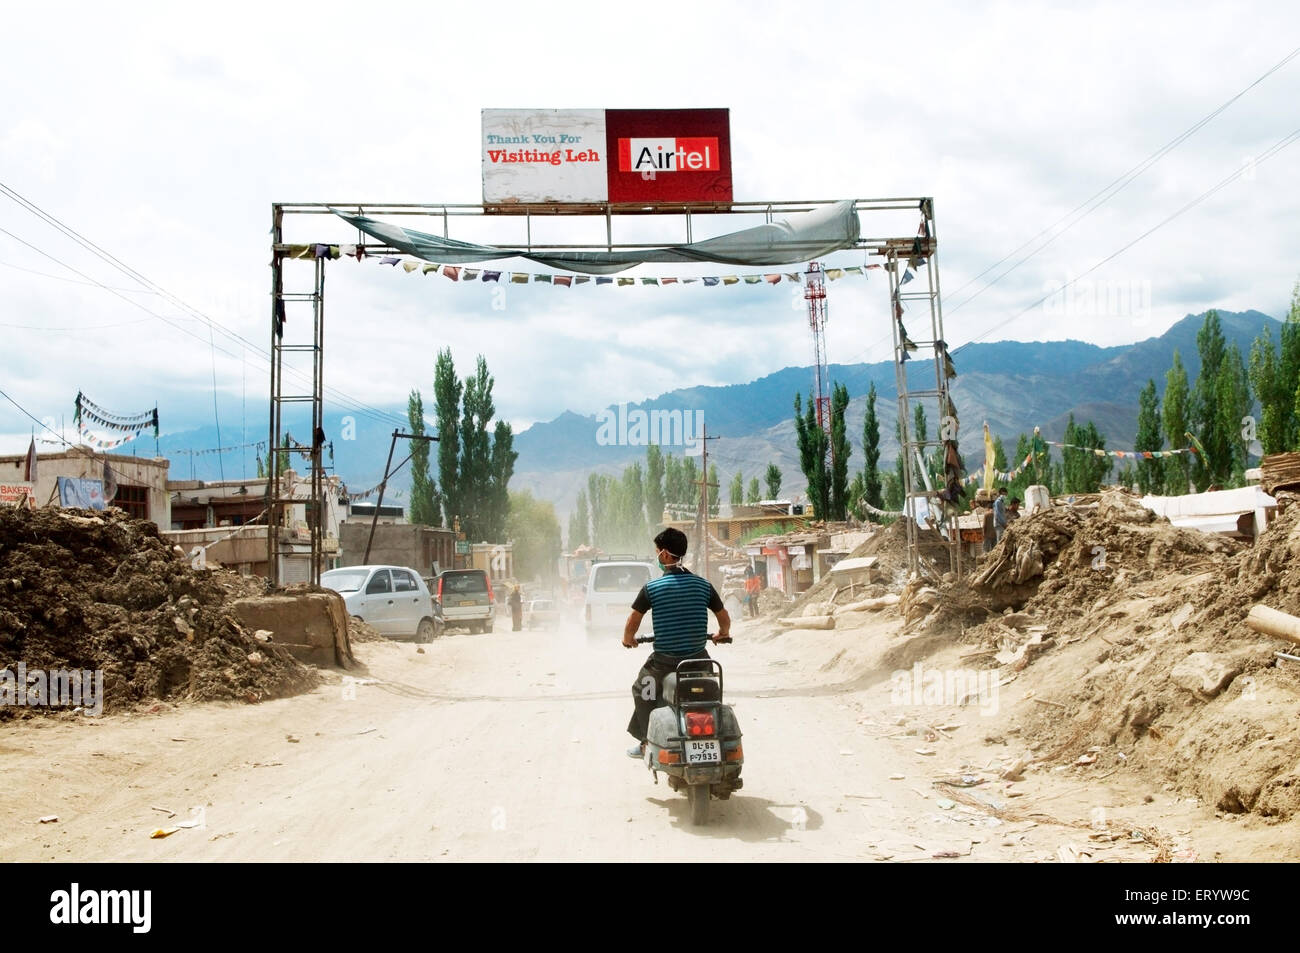 À l'aide de l'homme au masque de sécurité frontalière dans leh choglamsar après flashflood Leh Ladakh ; ; ; Jammu-et-Cachemire en Inde ; Banque D'Images